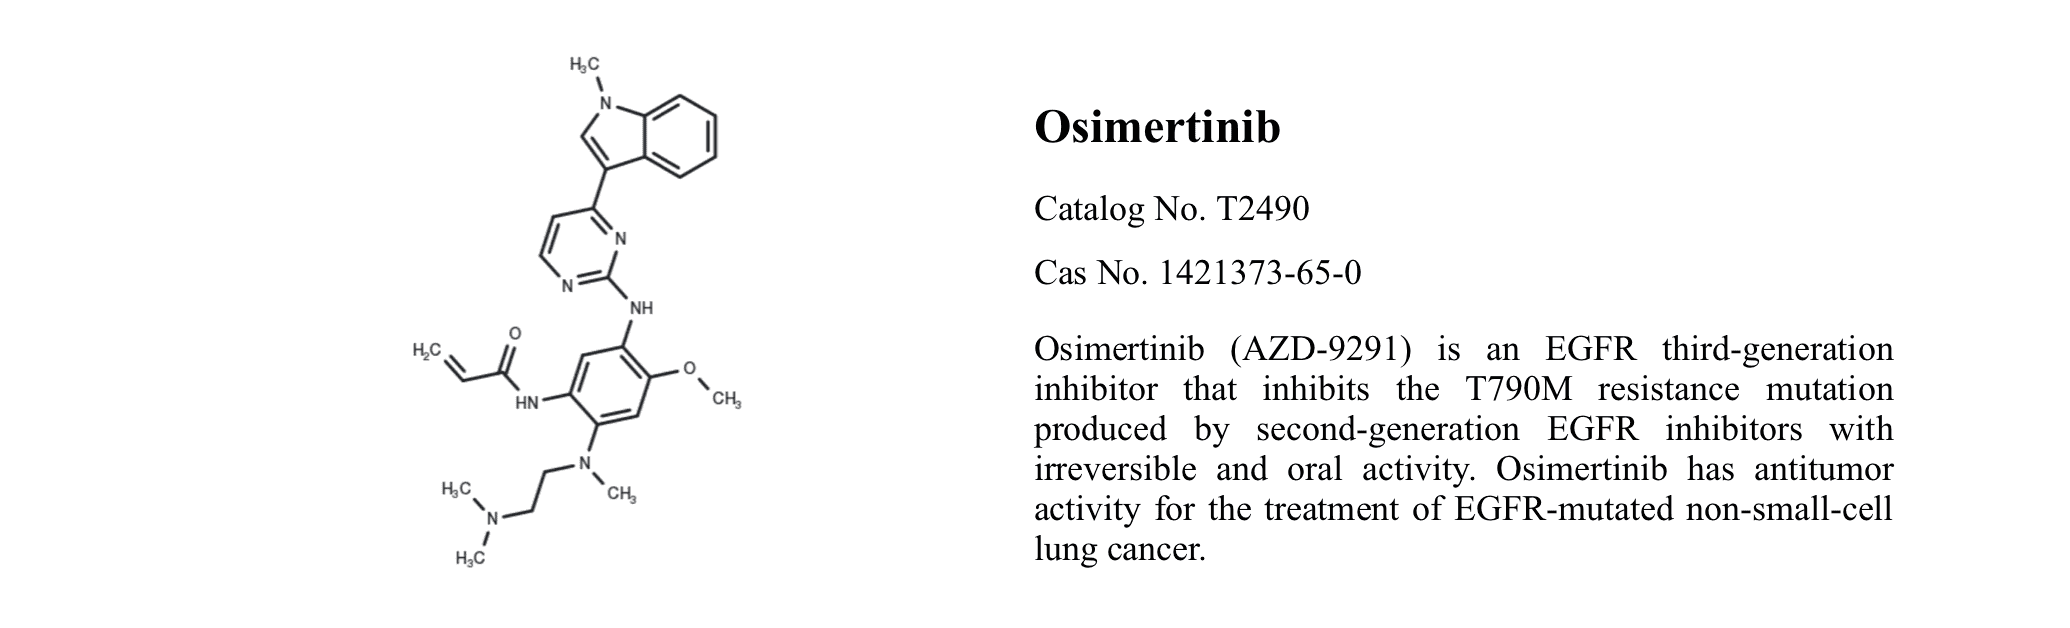 WIKIMOLE—Osimertinib